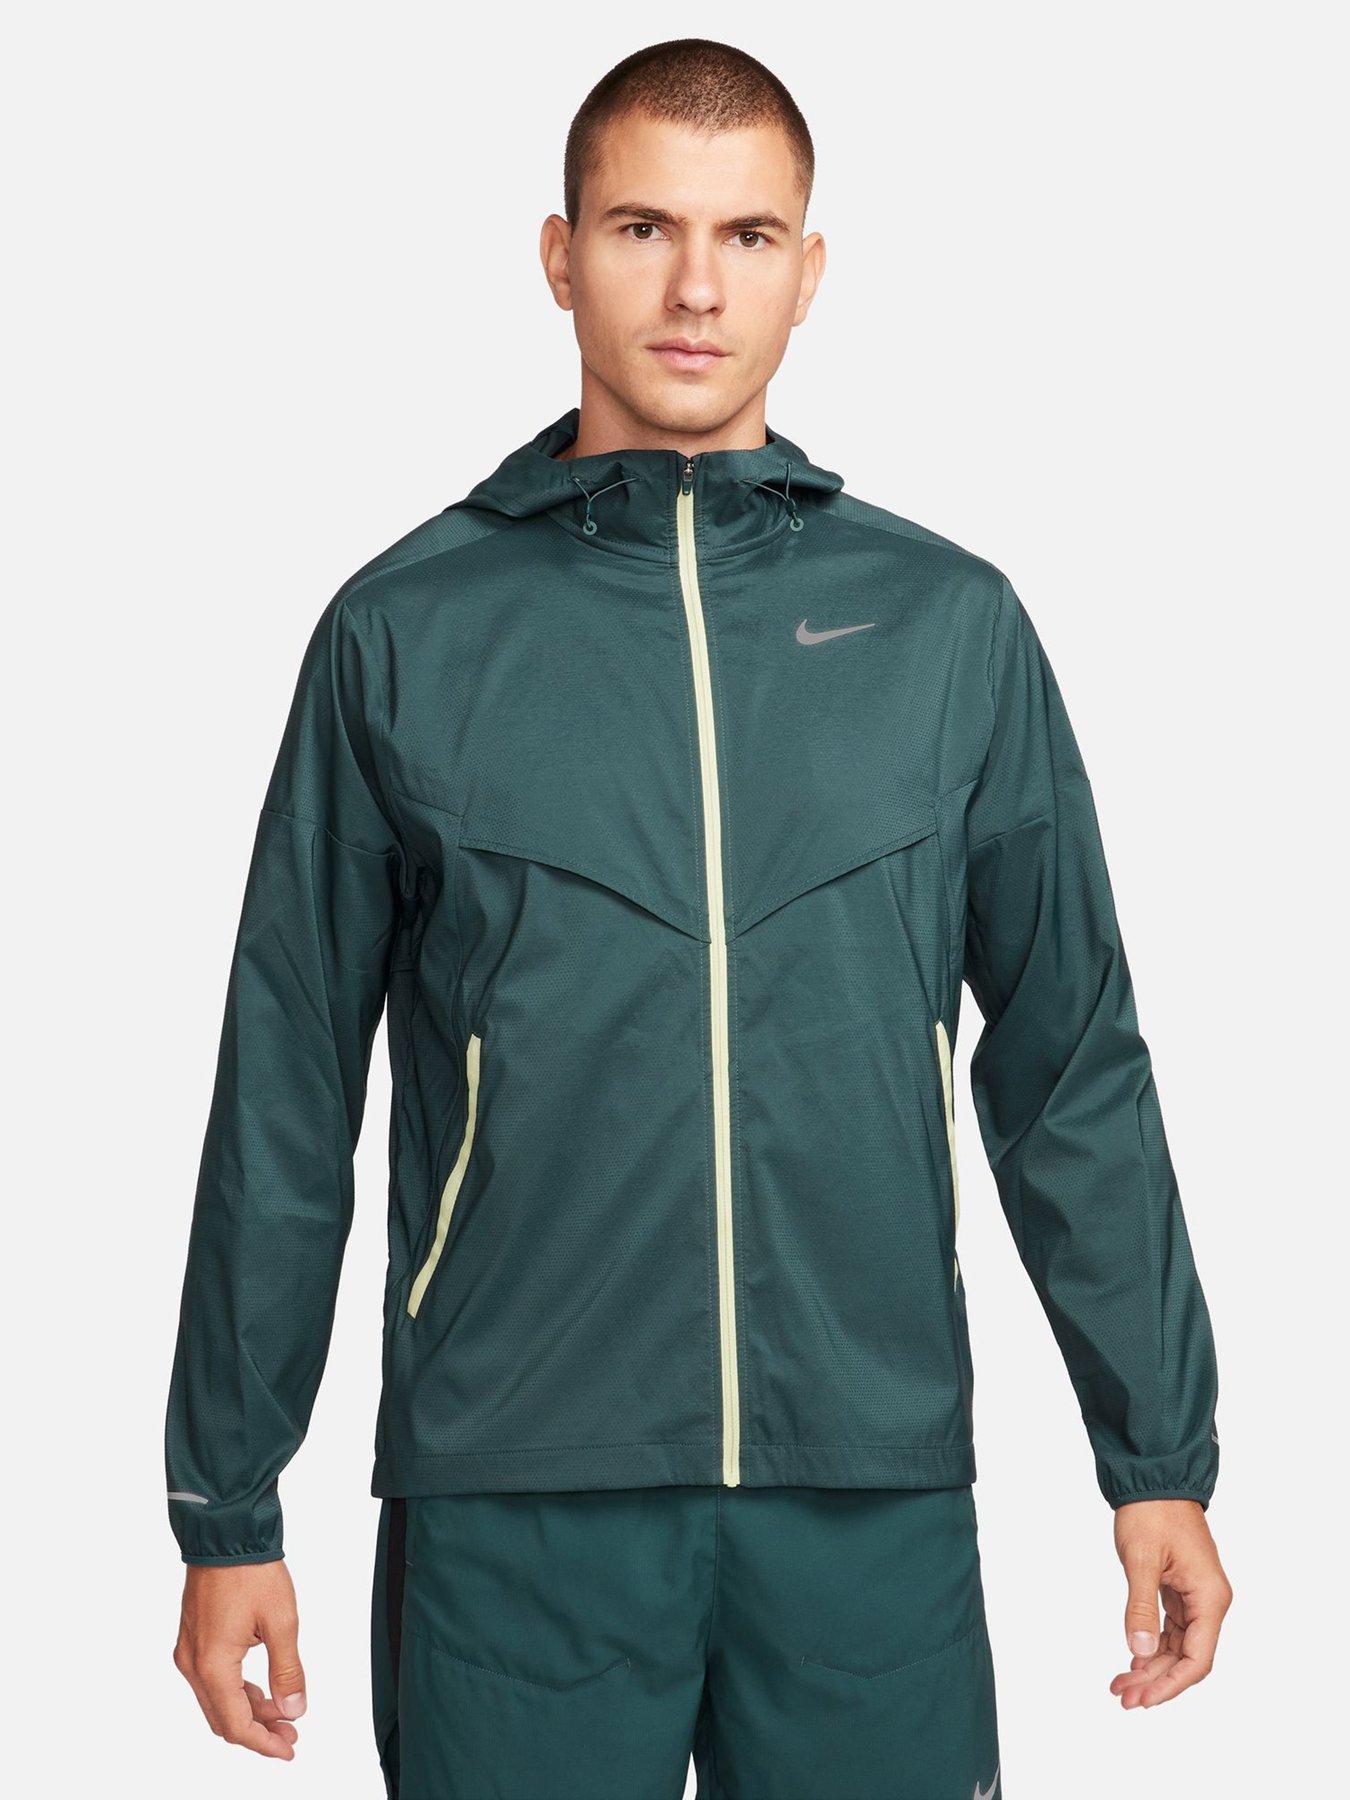 Nike Men's Running Repel Windrunner Jacket - Green